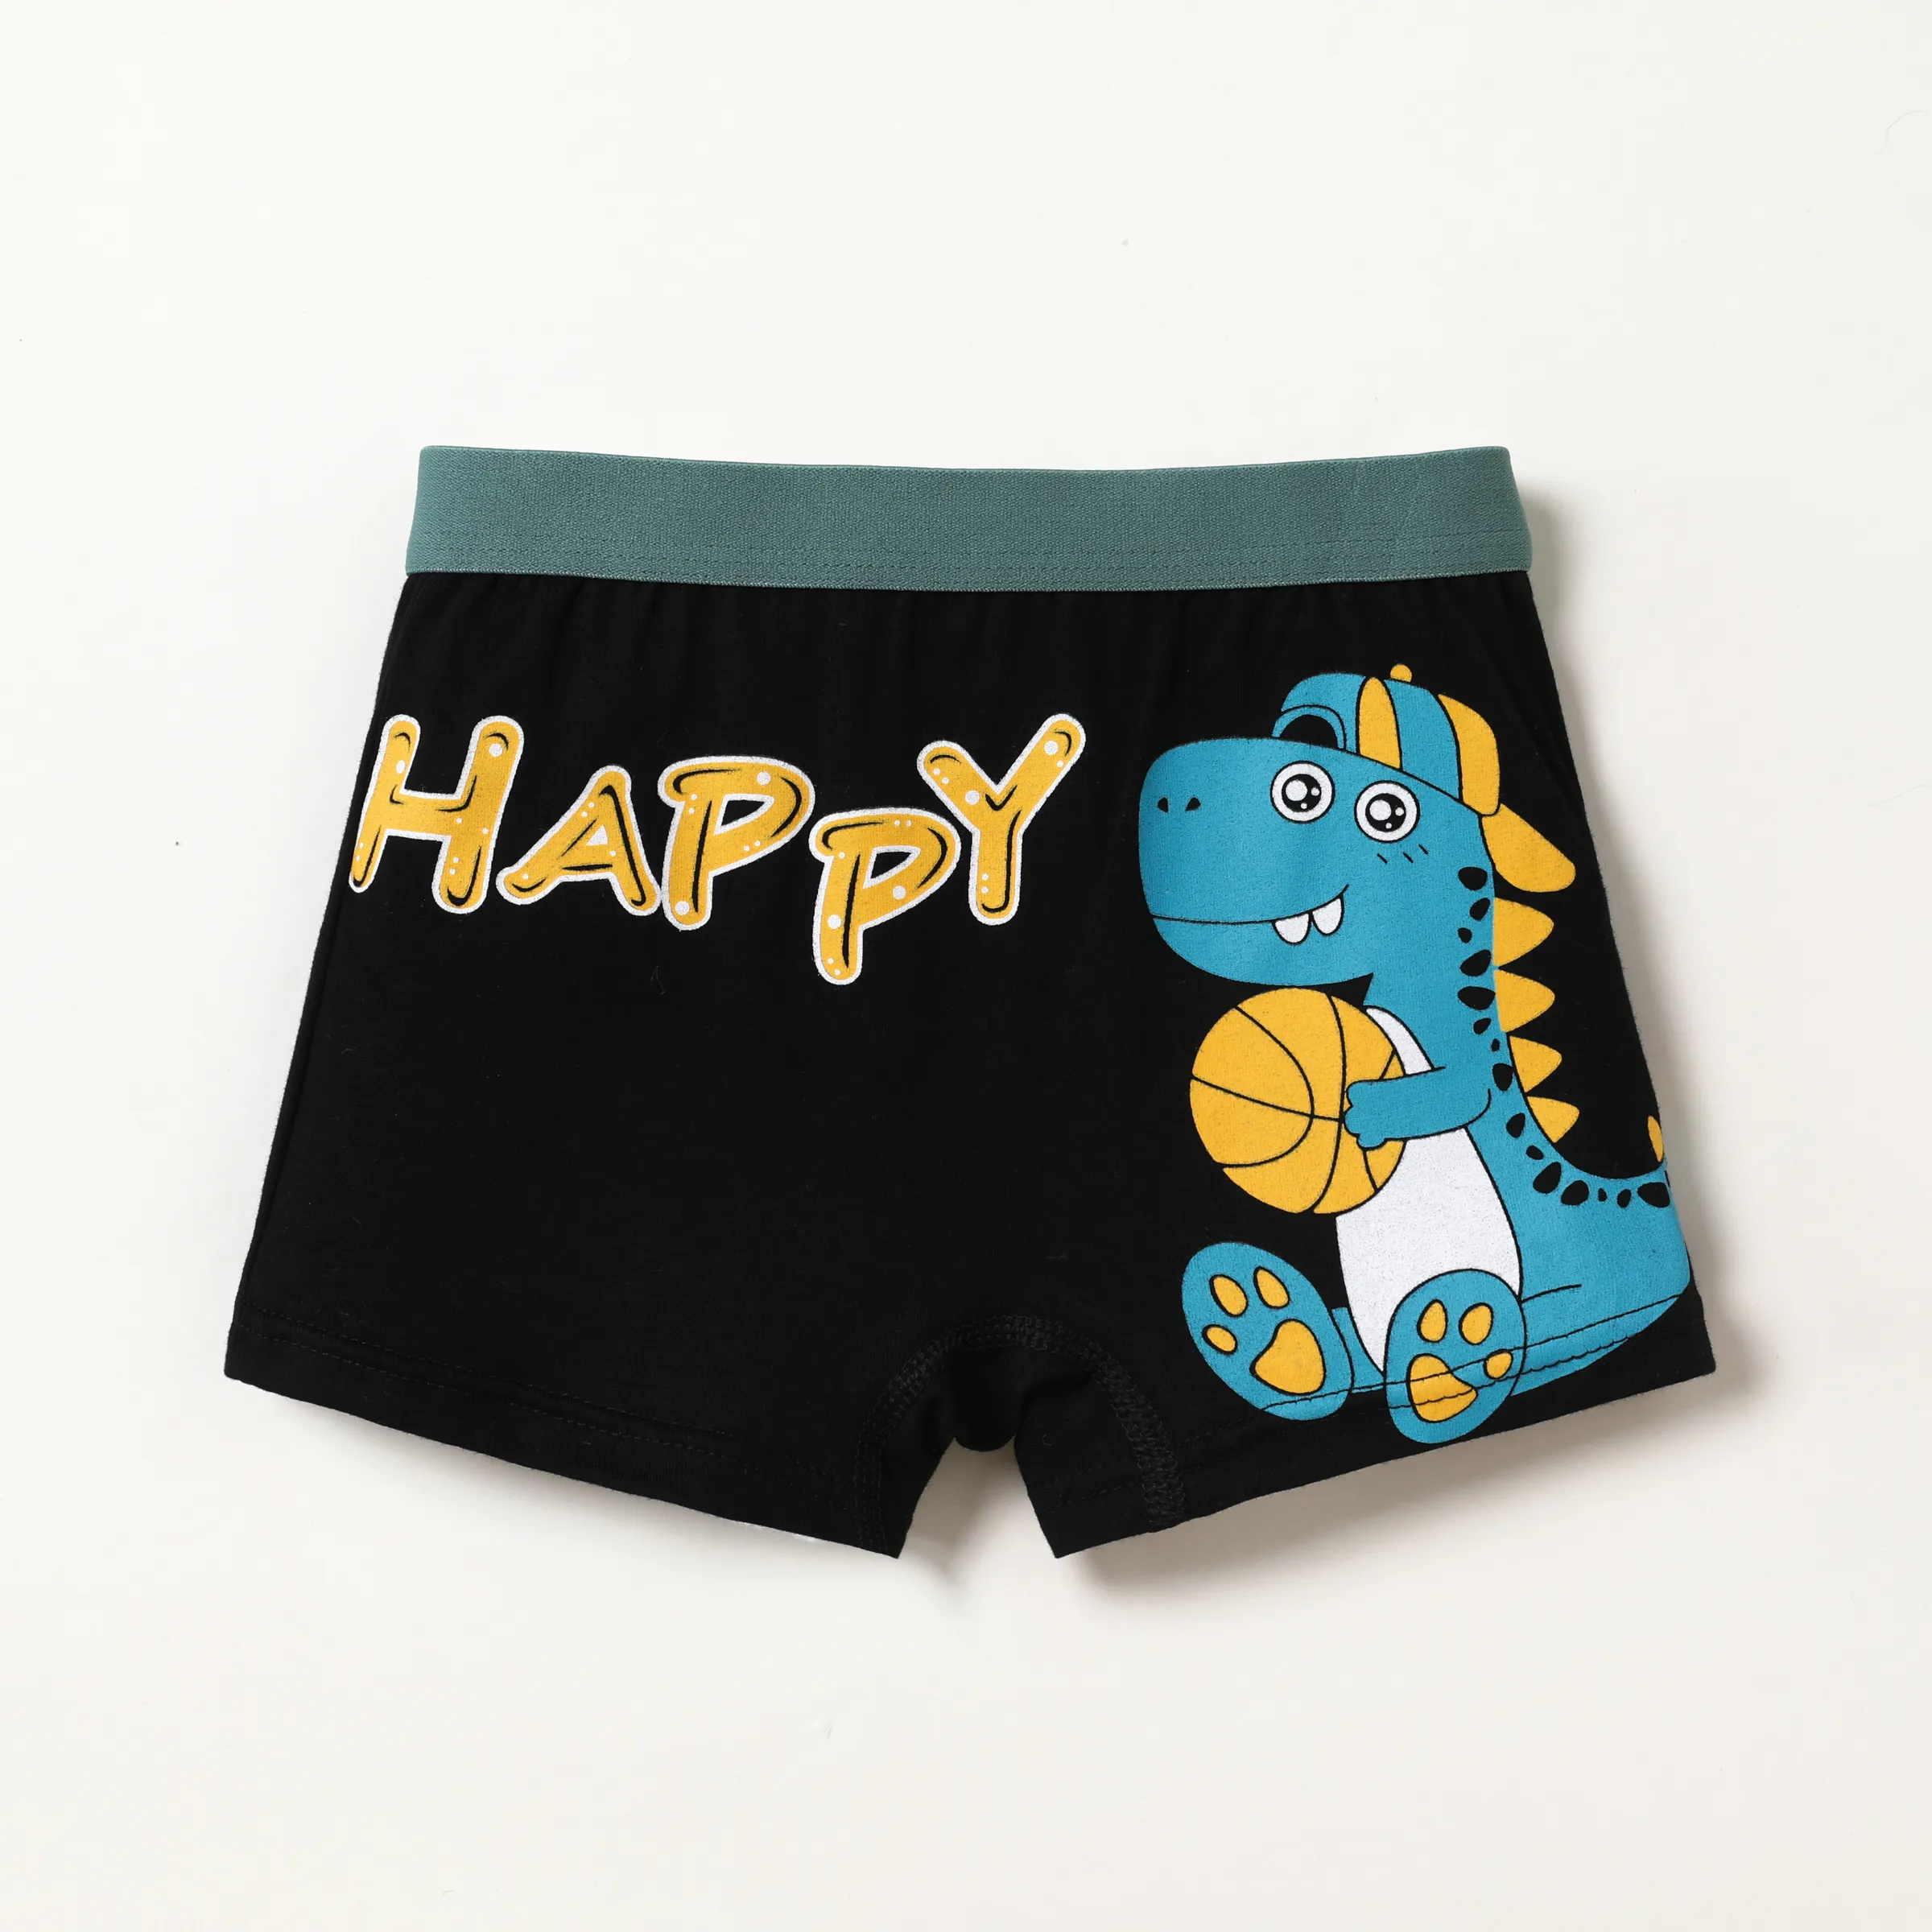 Dinosaur Toddler/Kid Boys' Underwear Cotton Shorts